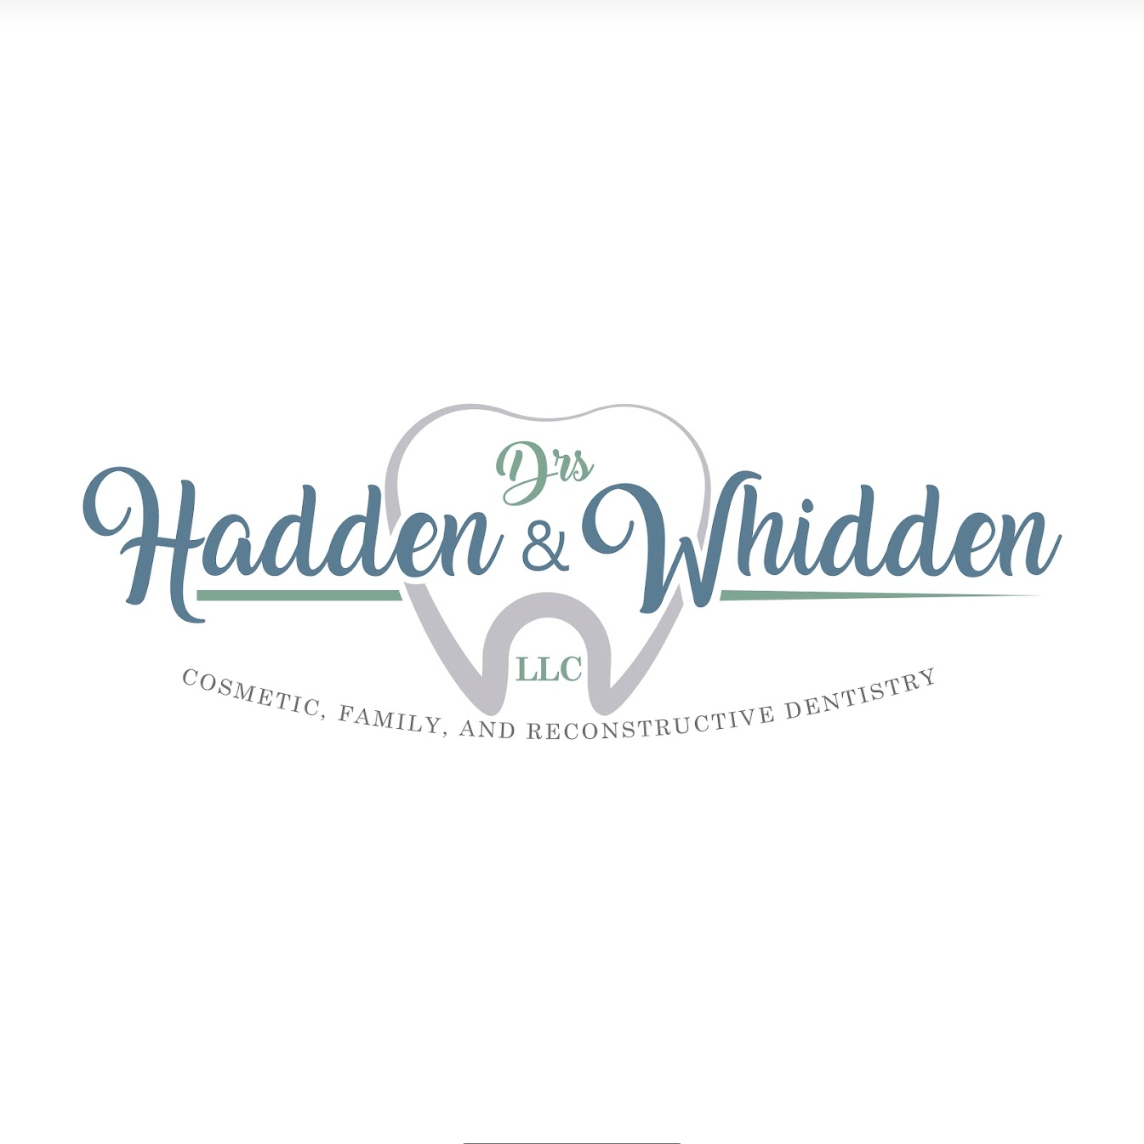 Drs. Hadden & Whidden, LLC | Vernon, CT